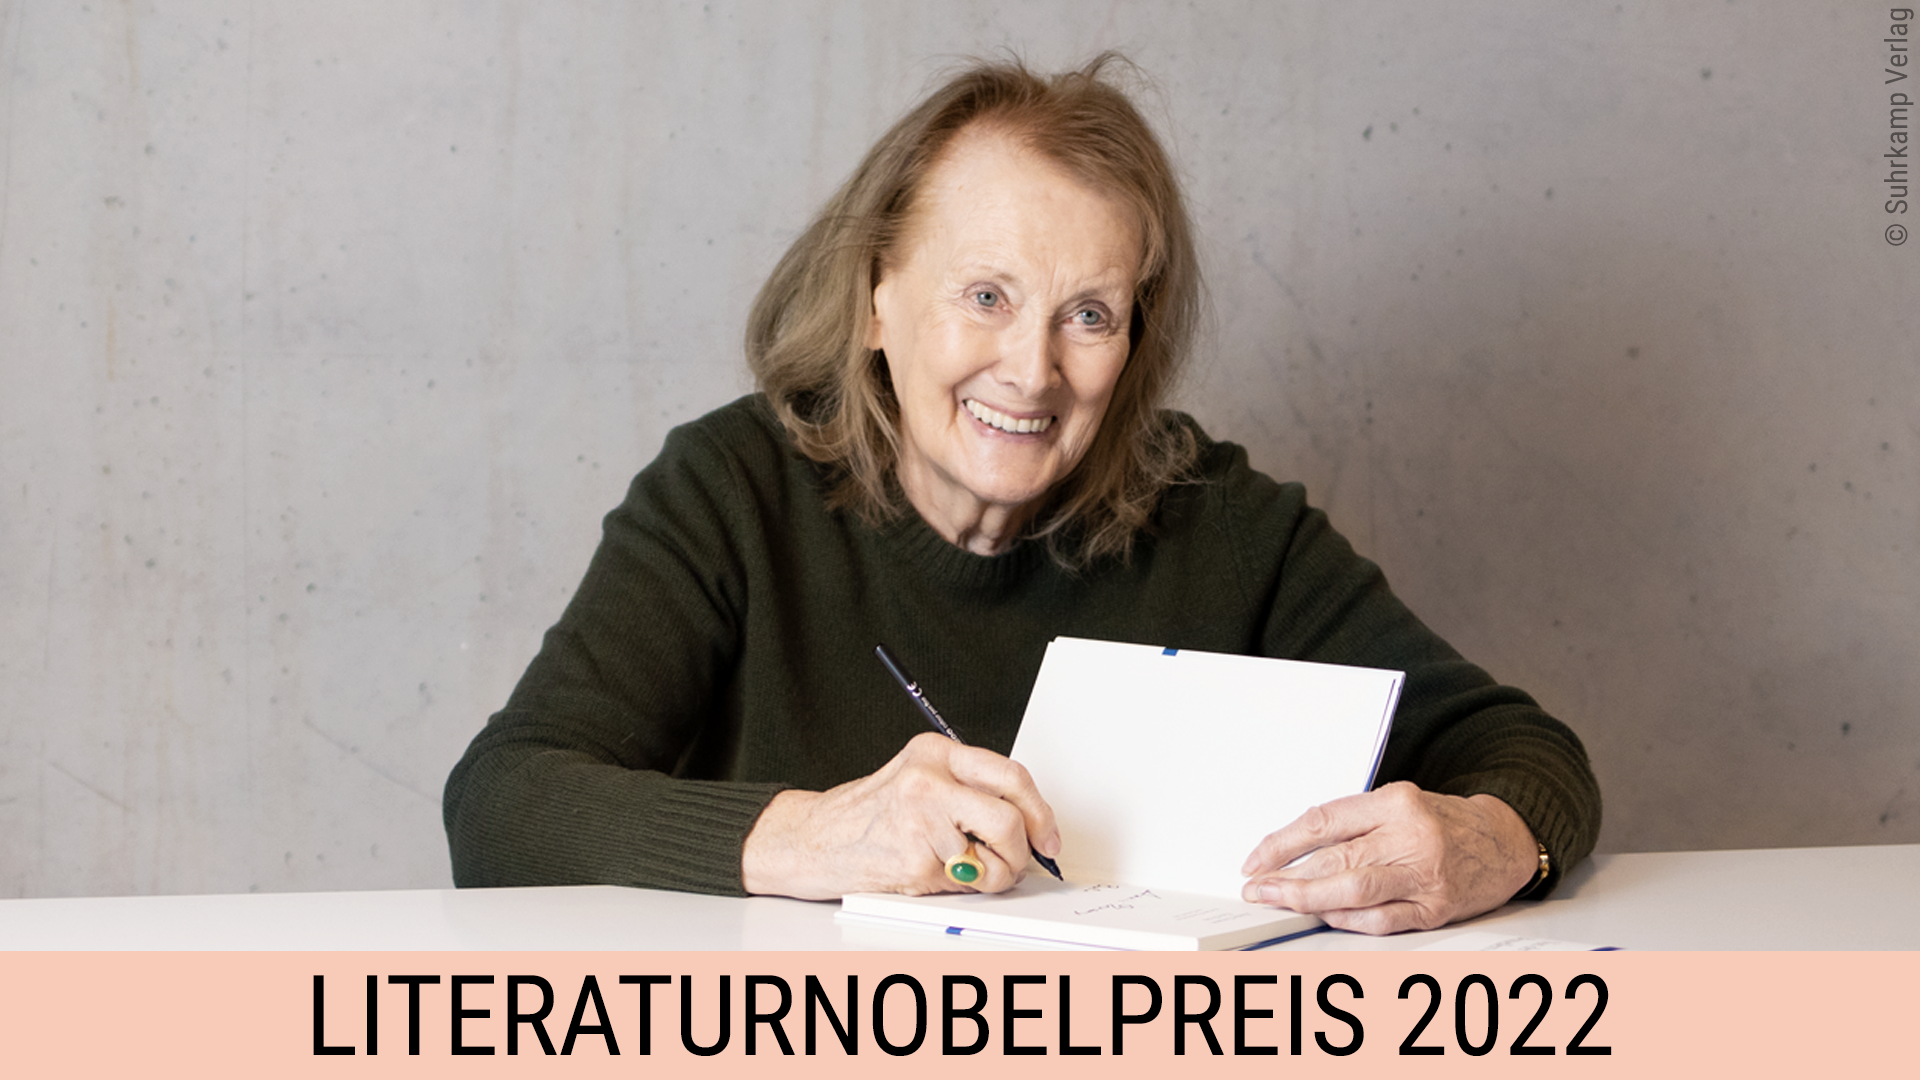 Featured image for “Literaturnobelpreis 2022 für Annie Ernaux”